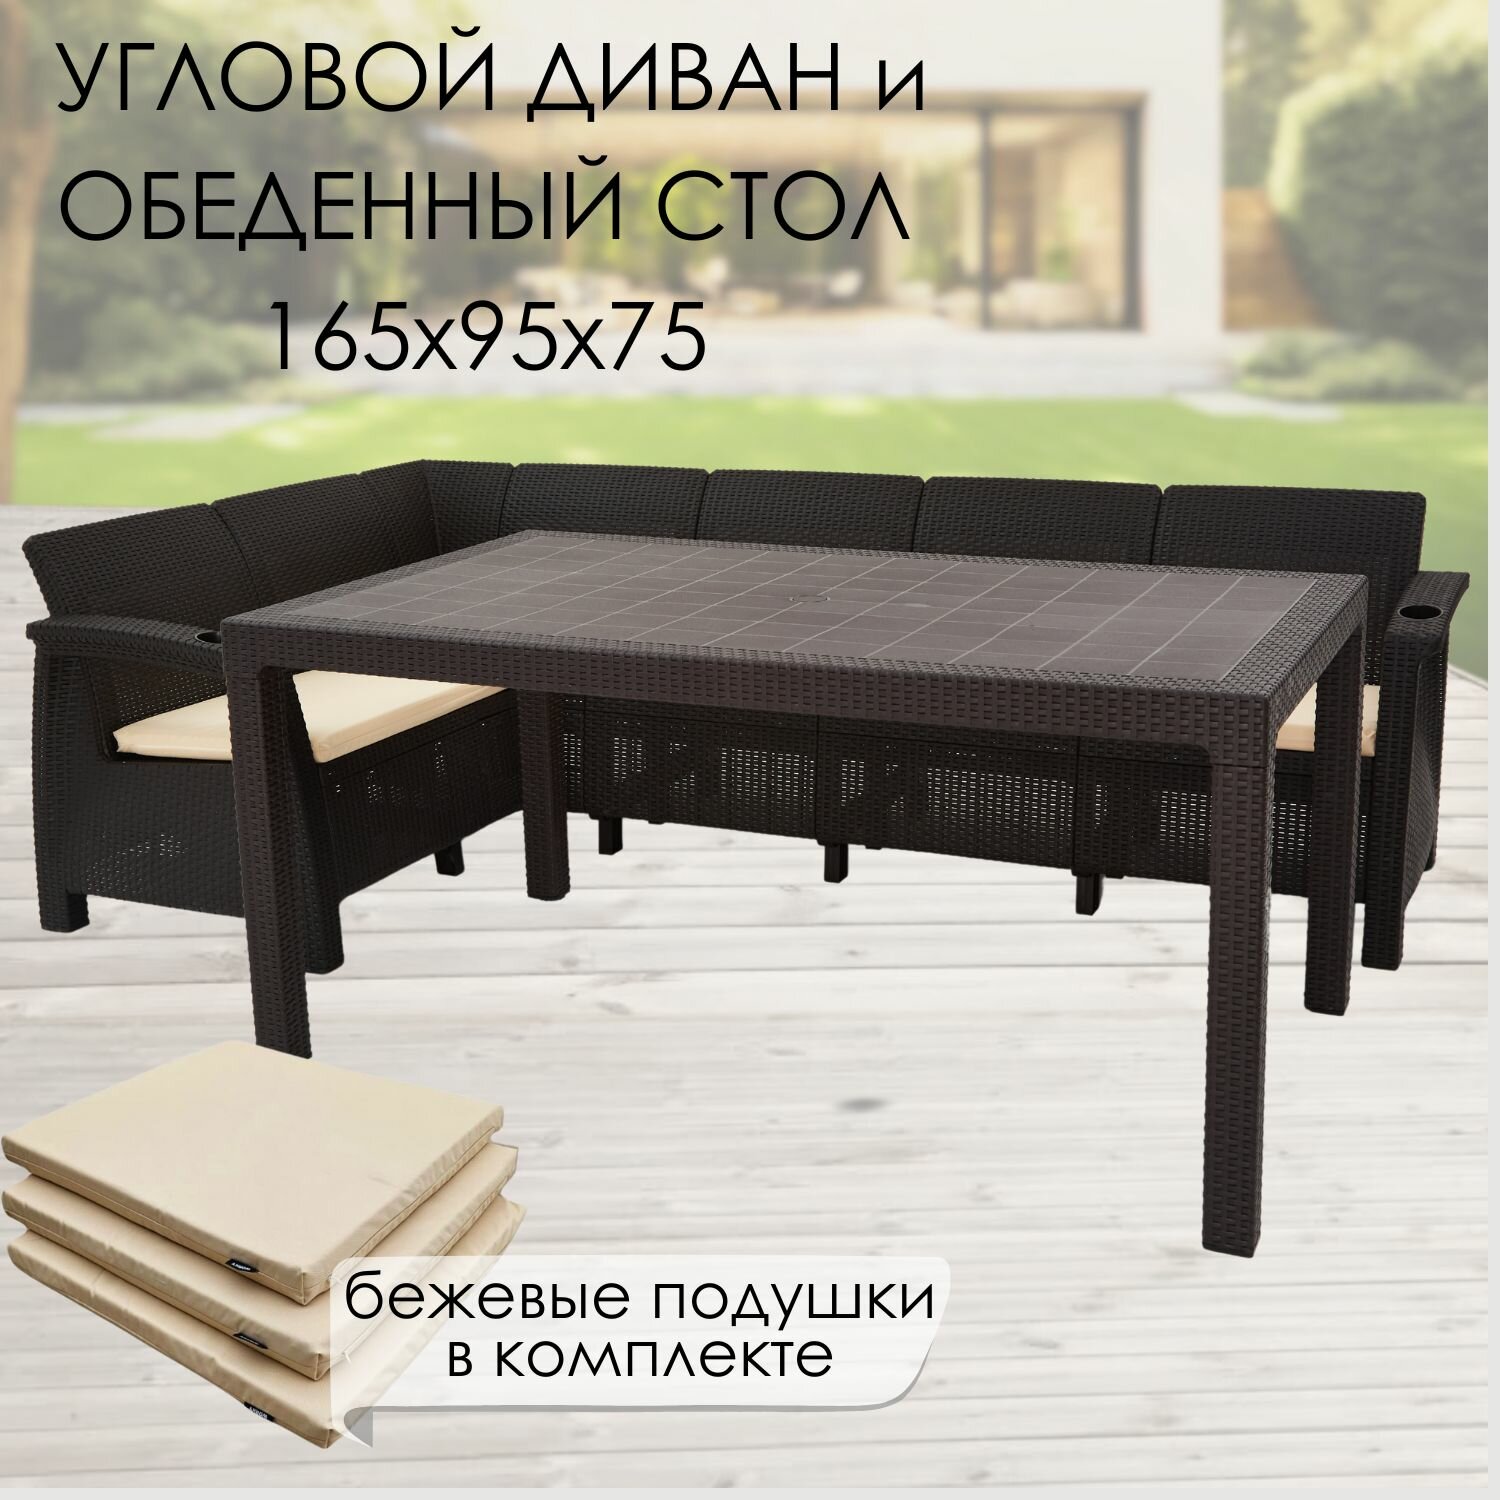 Комплект садовой мебели: Диван угловой и стол обеденный 160х95, мокко (подушки бежевого цвета)